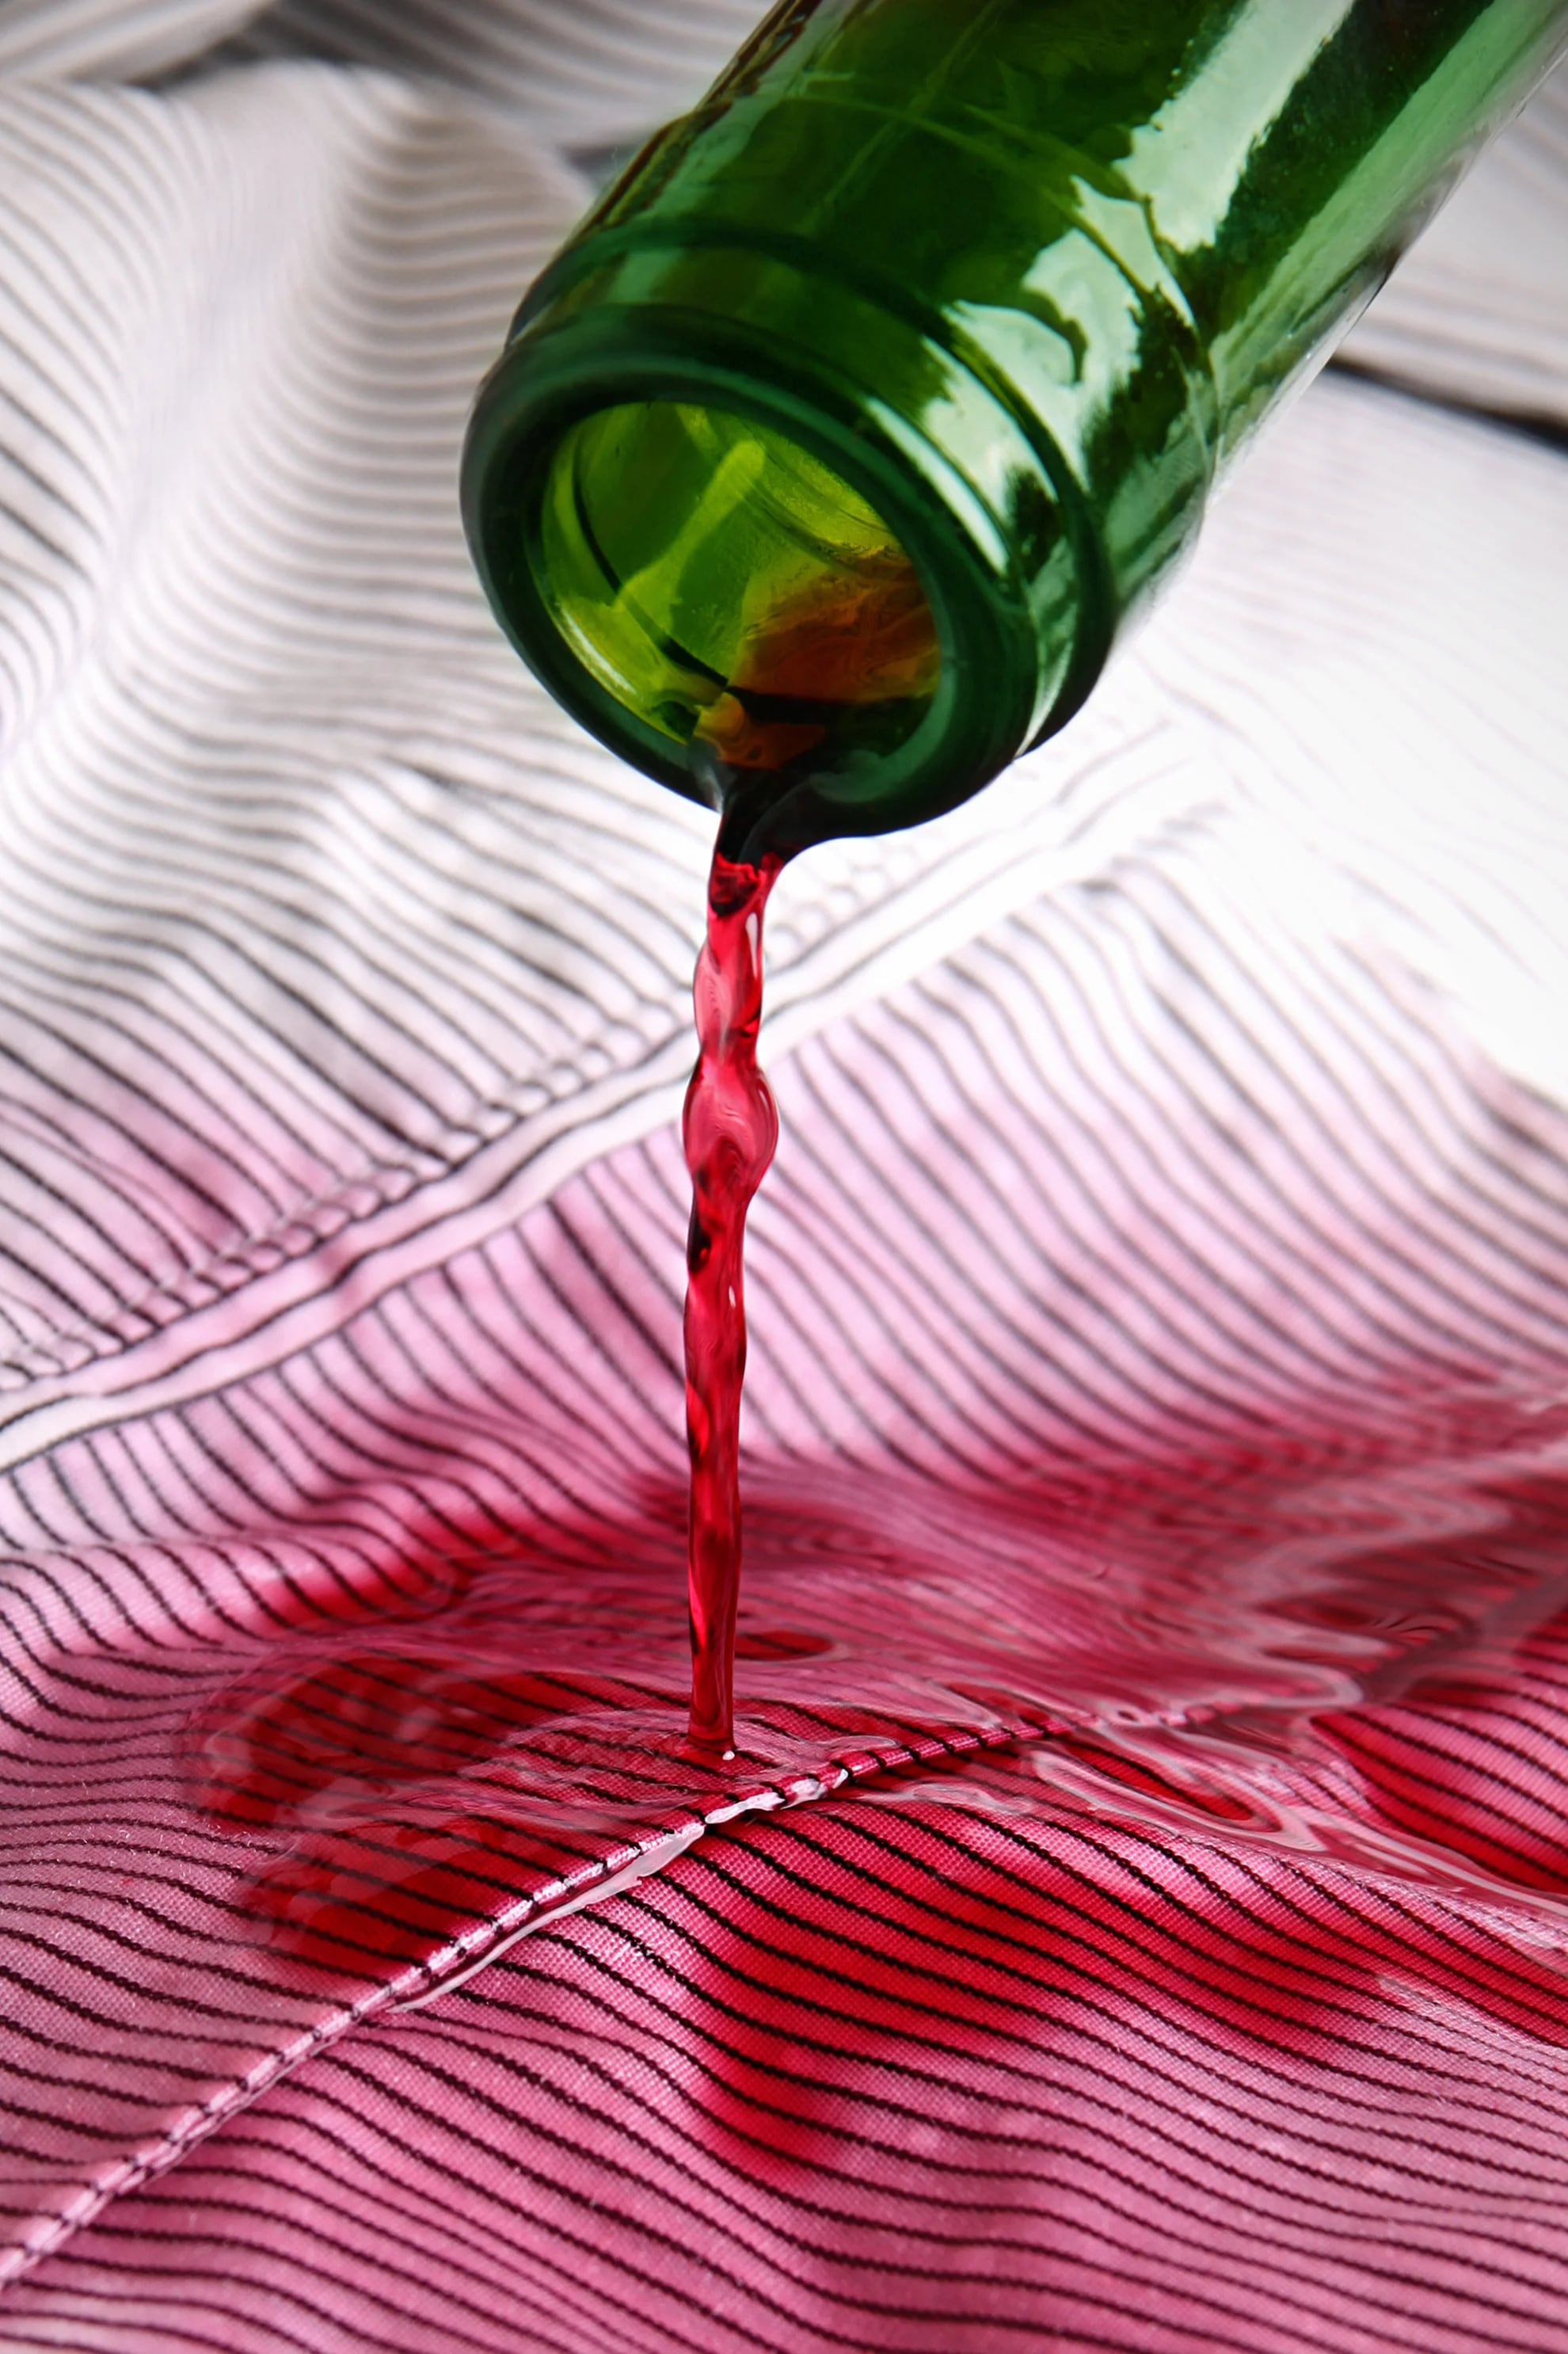 Una de las manchas más comunes es el derrame de vino tinto en la ropa, dificiles de sacar pero muy ocurrentes en reuniones con amigos (iStock)